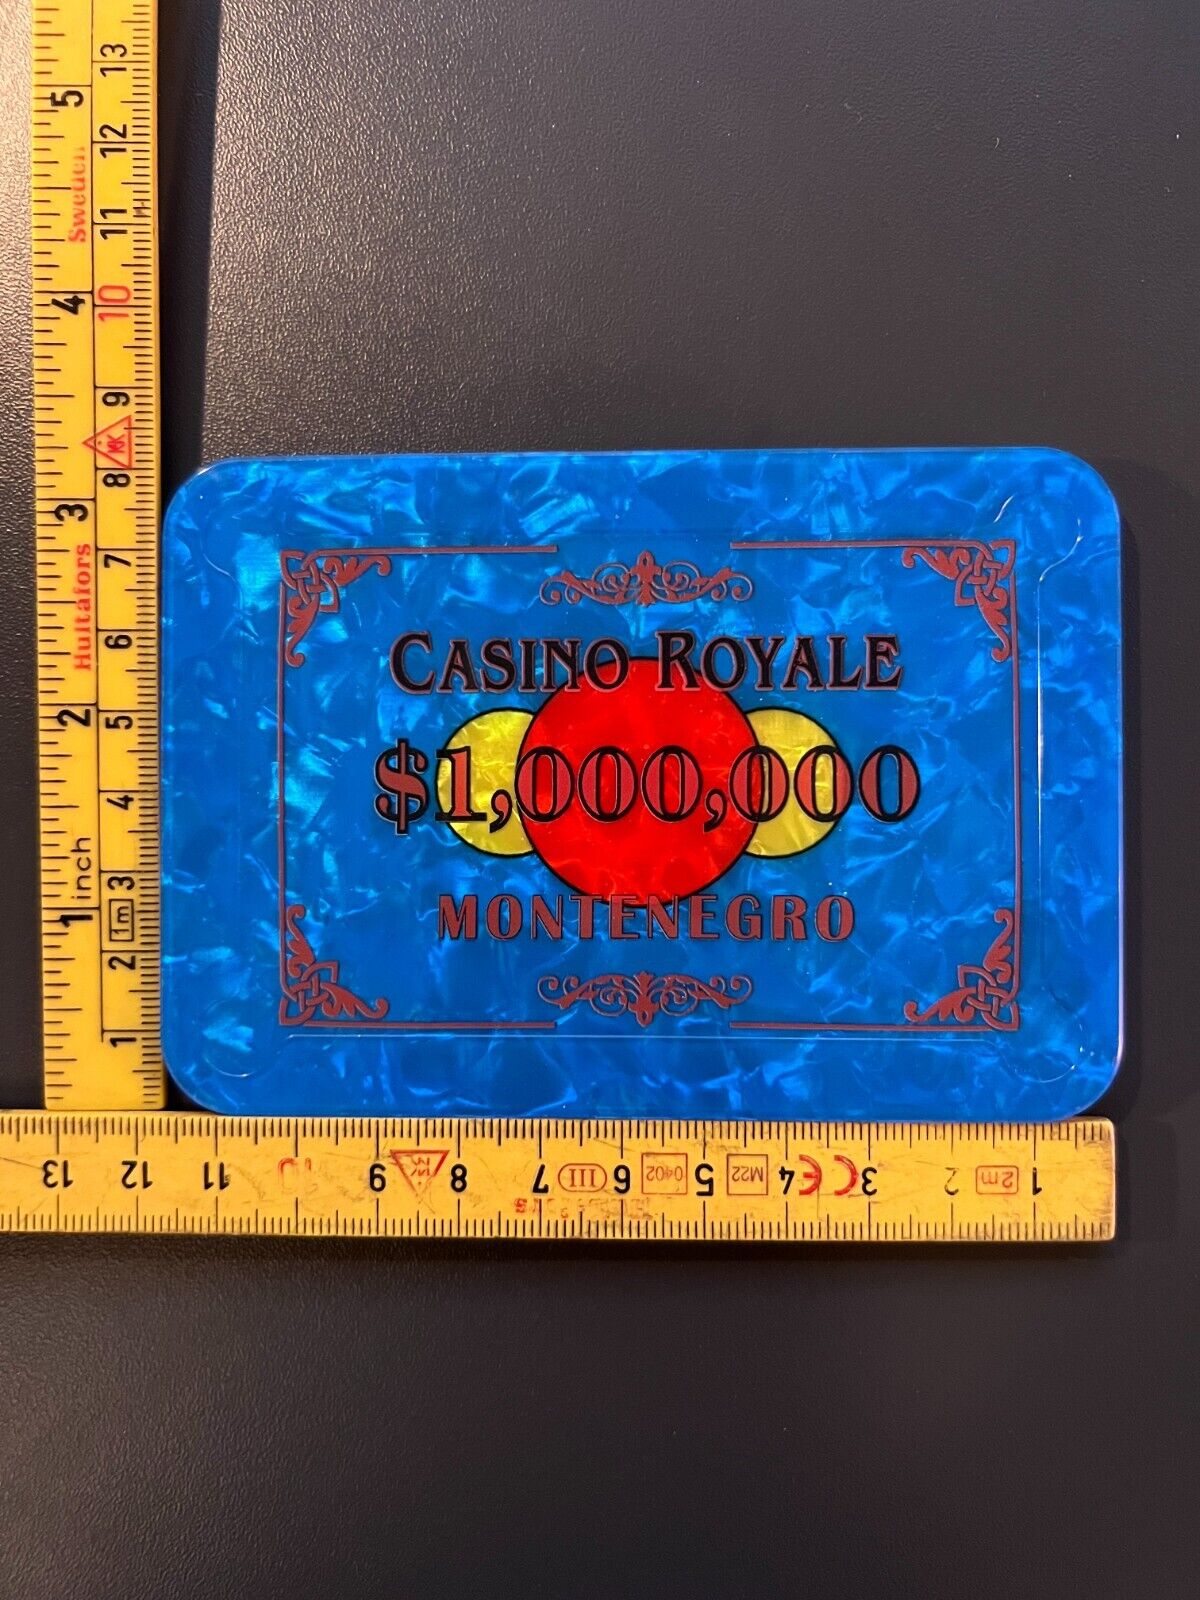 $1,000,000 james Bond Casino royale poker plaque BEST REPLICA MADE SO FAR